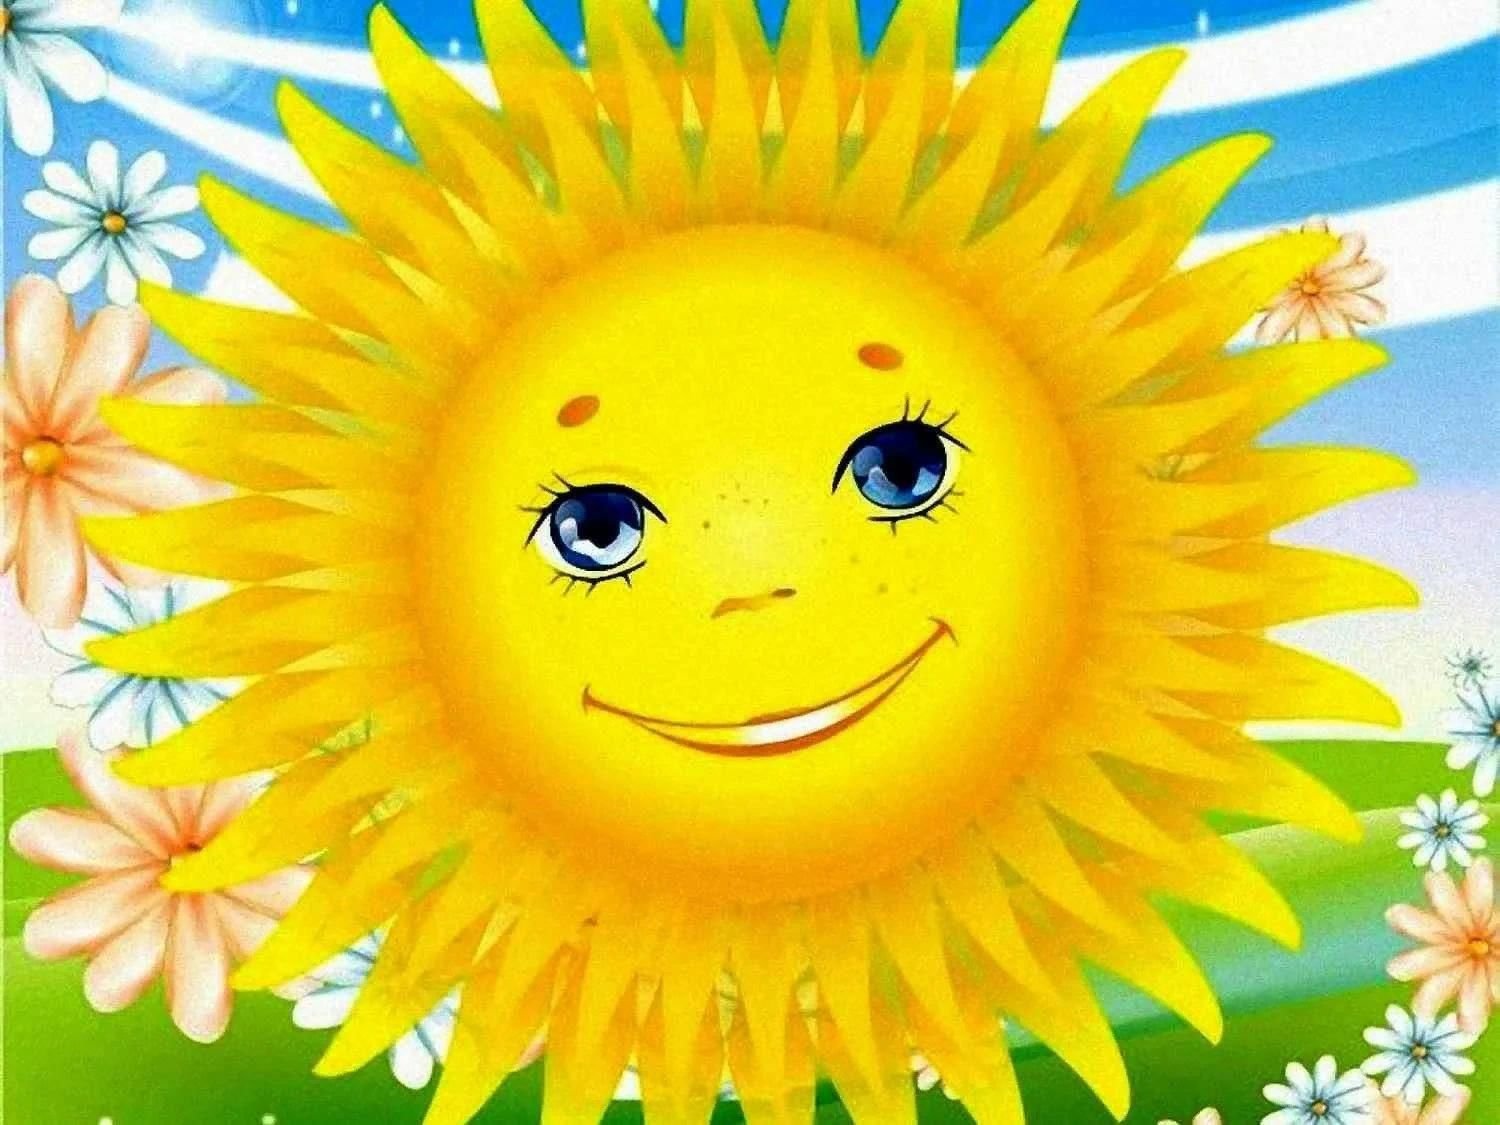 Какая ты хорошая как солнышко лучистое песня. Солнышко картинка. Солнышко рисунок. Солнце рисунок. Солнышко с лучиками.